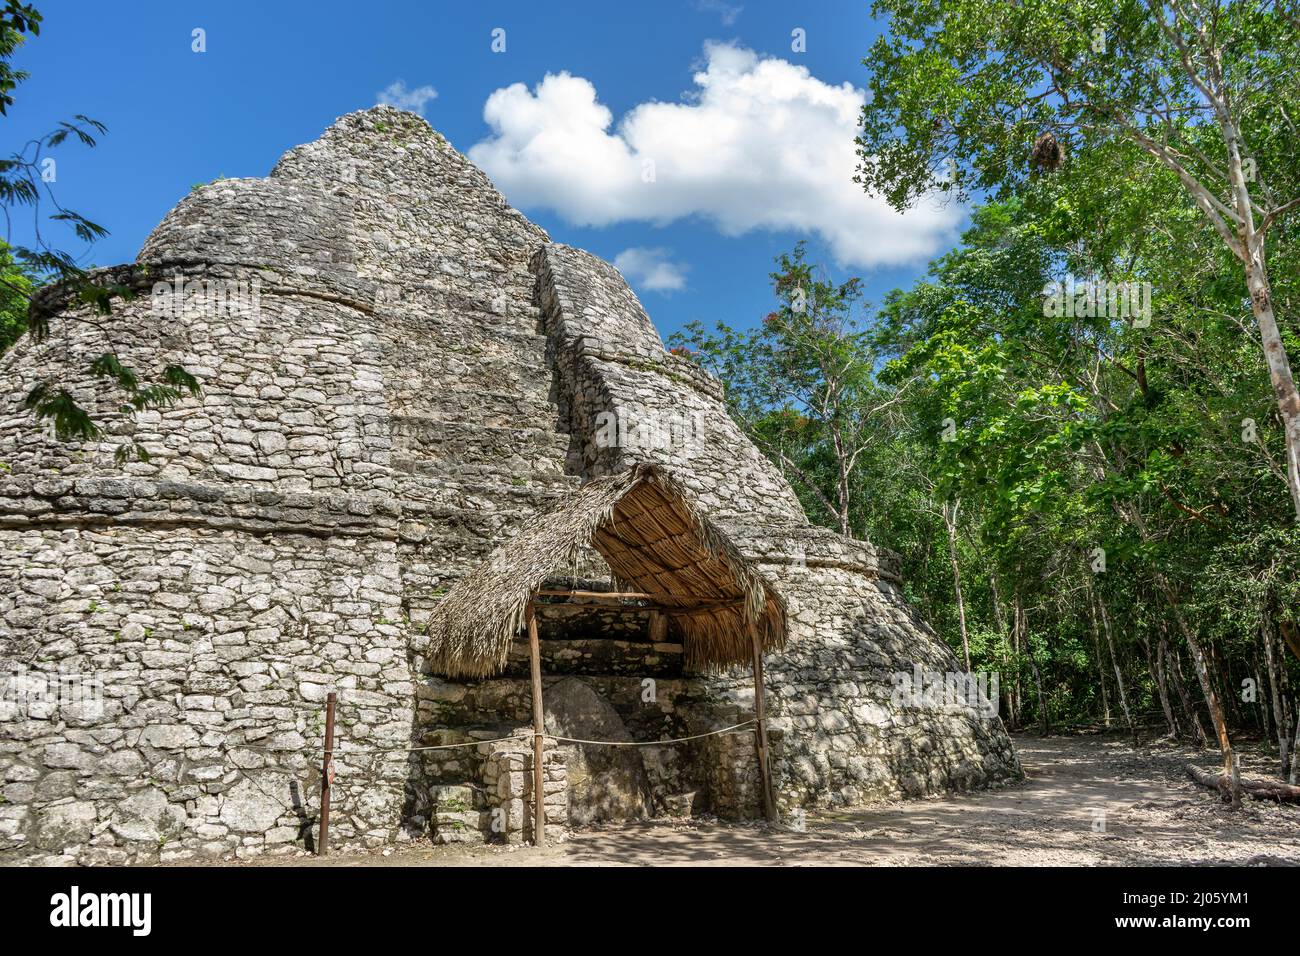 Mayan observatory ruins at Coba, Mexico Stock Photo